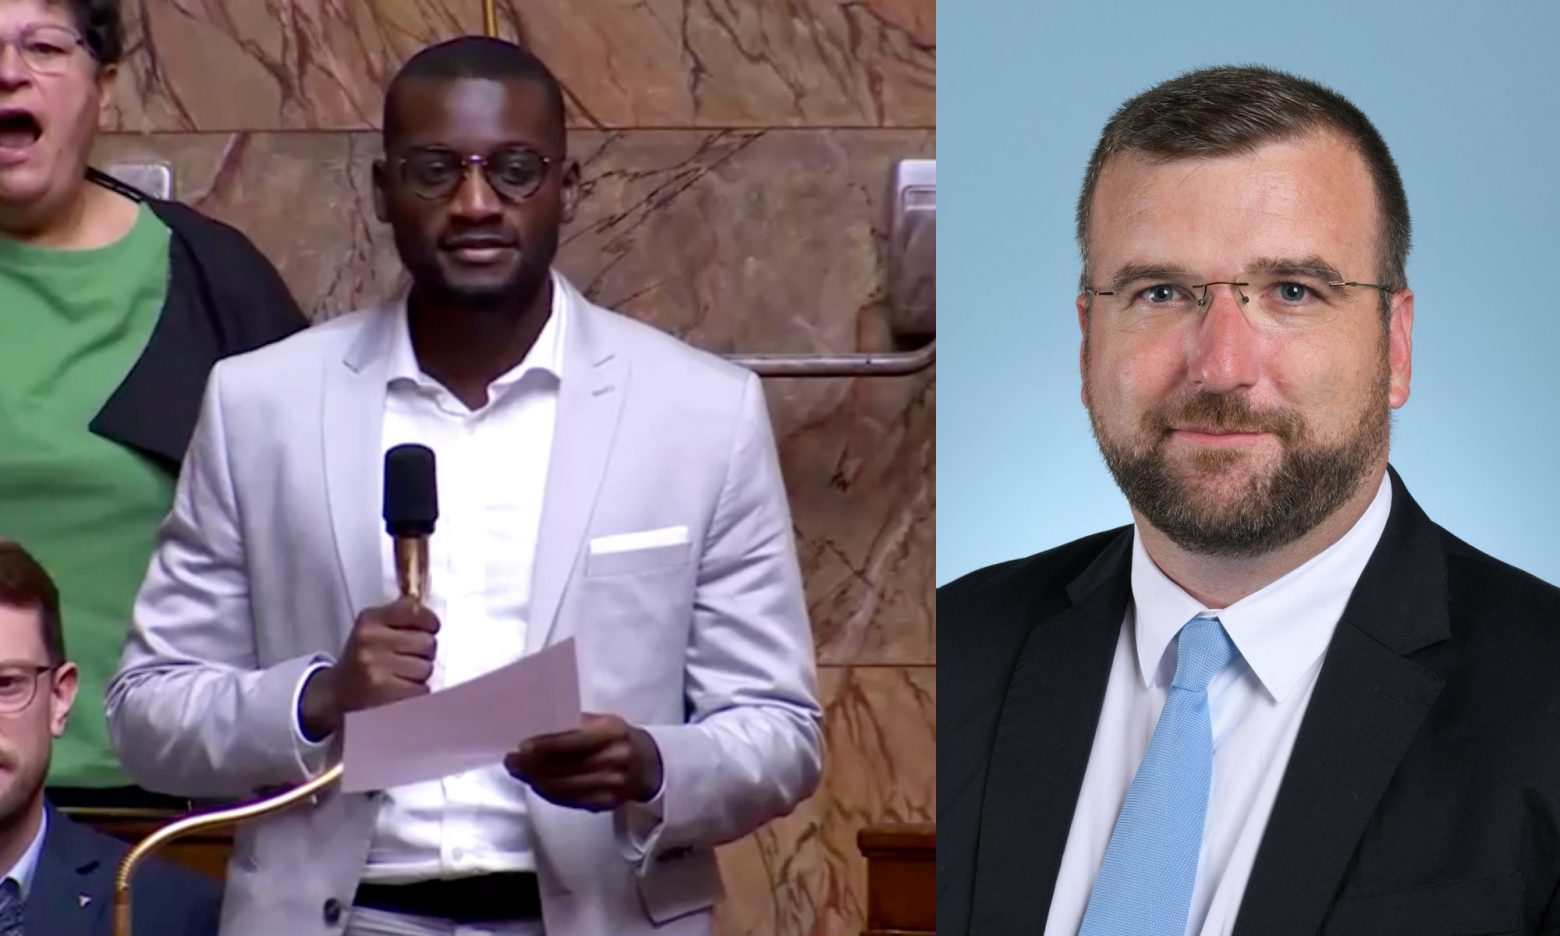 Γαλλία: Διεκόπη η συνεδρίαση στο κοινοβούλιο - Ακροδεξιός βουλευτής φώναξε σε μαύρο συνάδελφό του «να επιστρέψει στην Αφρική»